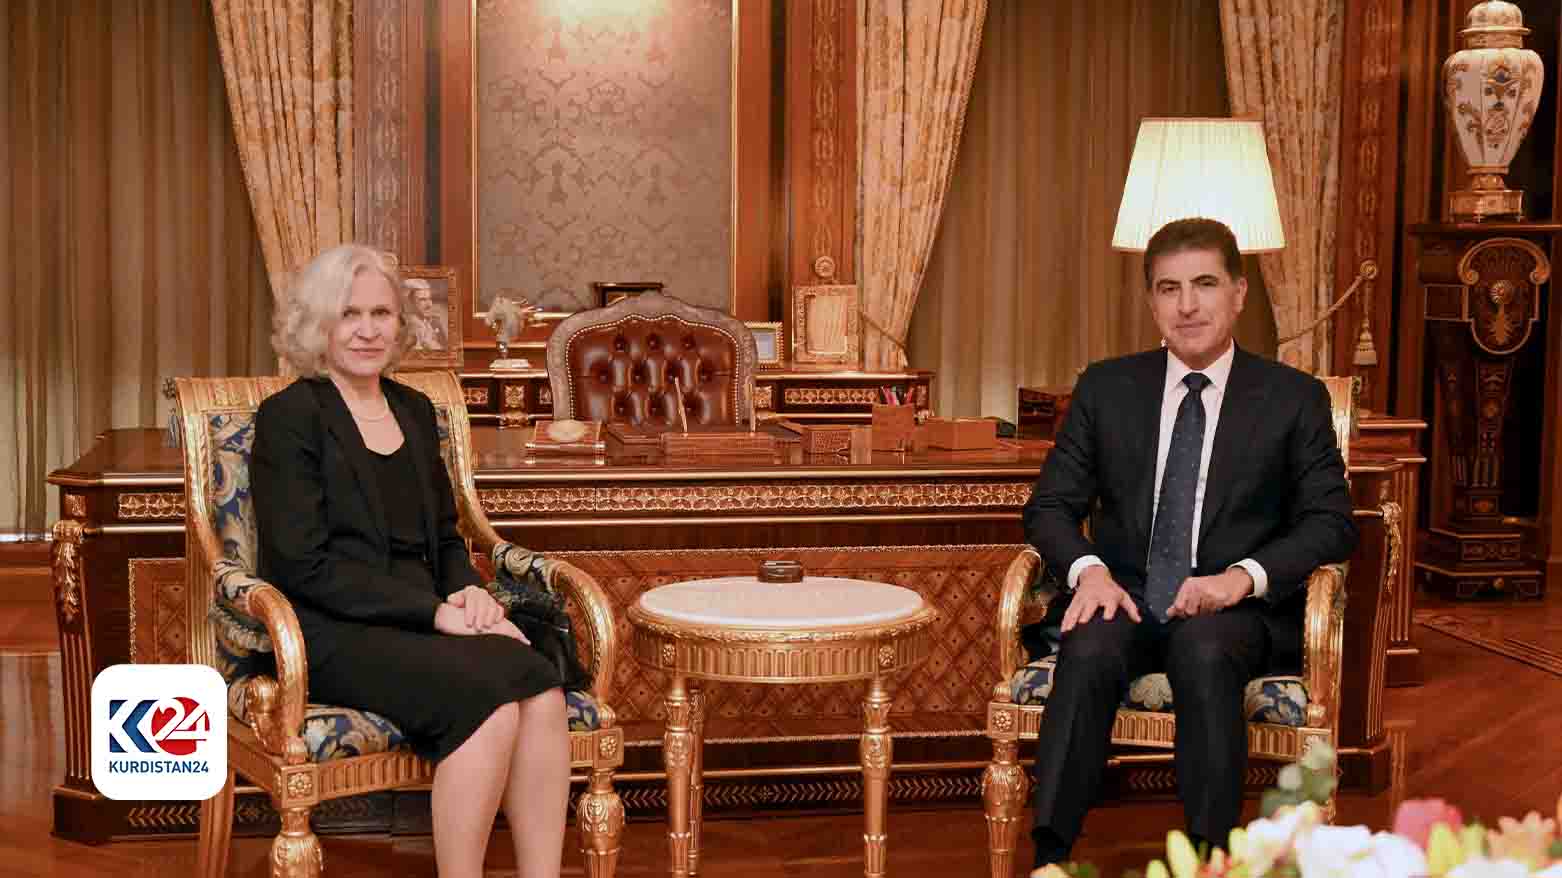 Finlandiya'nın Irak Büyükelçisi Anu Sarela ve Kürdistan Bölgesi Başkanı Neçirvan Barzani